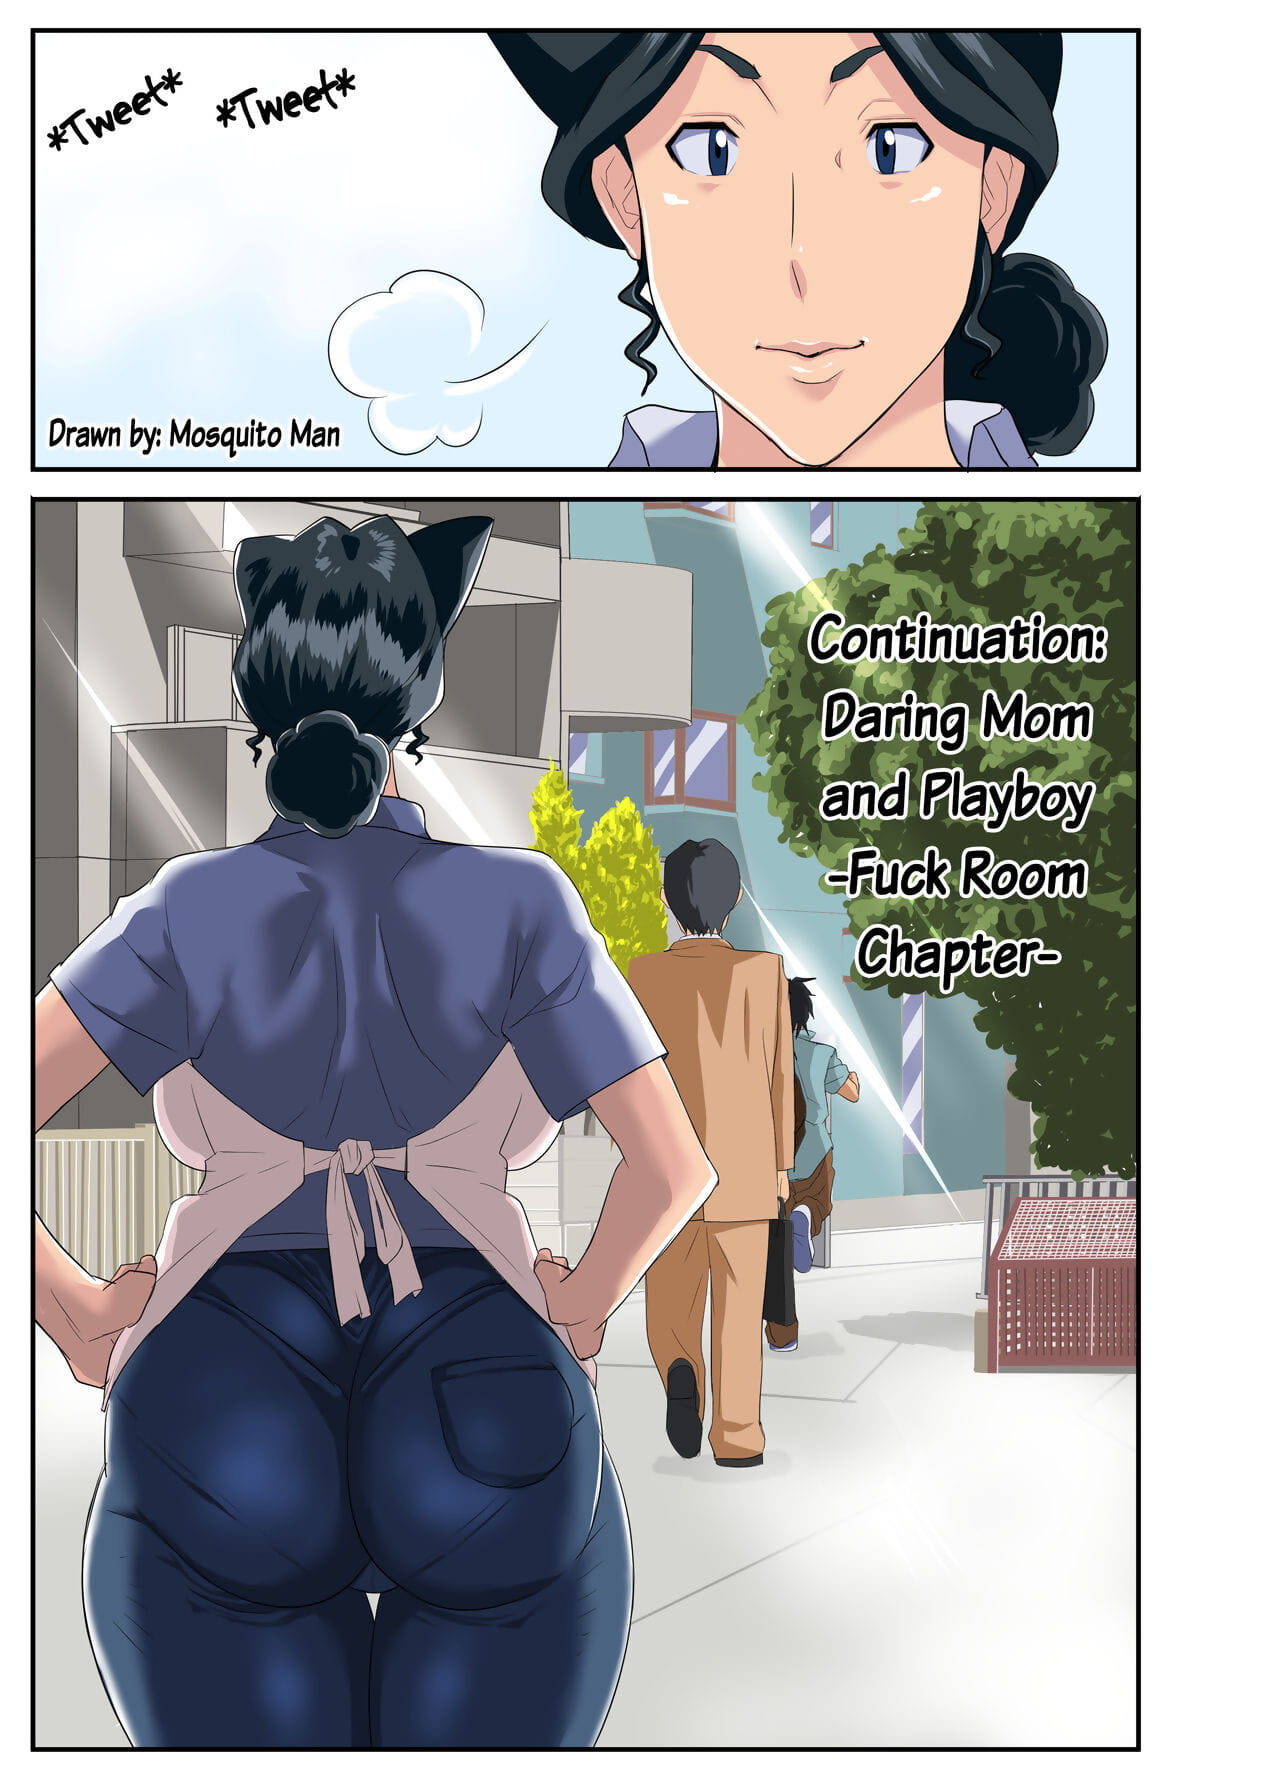 zoku kimottama kaa chan naar charao ~yaribeya hen~ continuation: Durf moeder & playboy neuken kamer hoofdstuk page 1